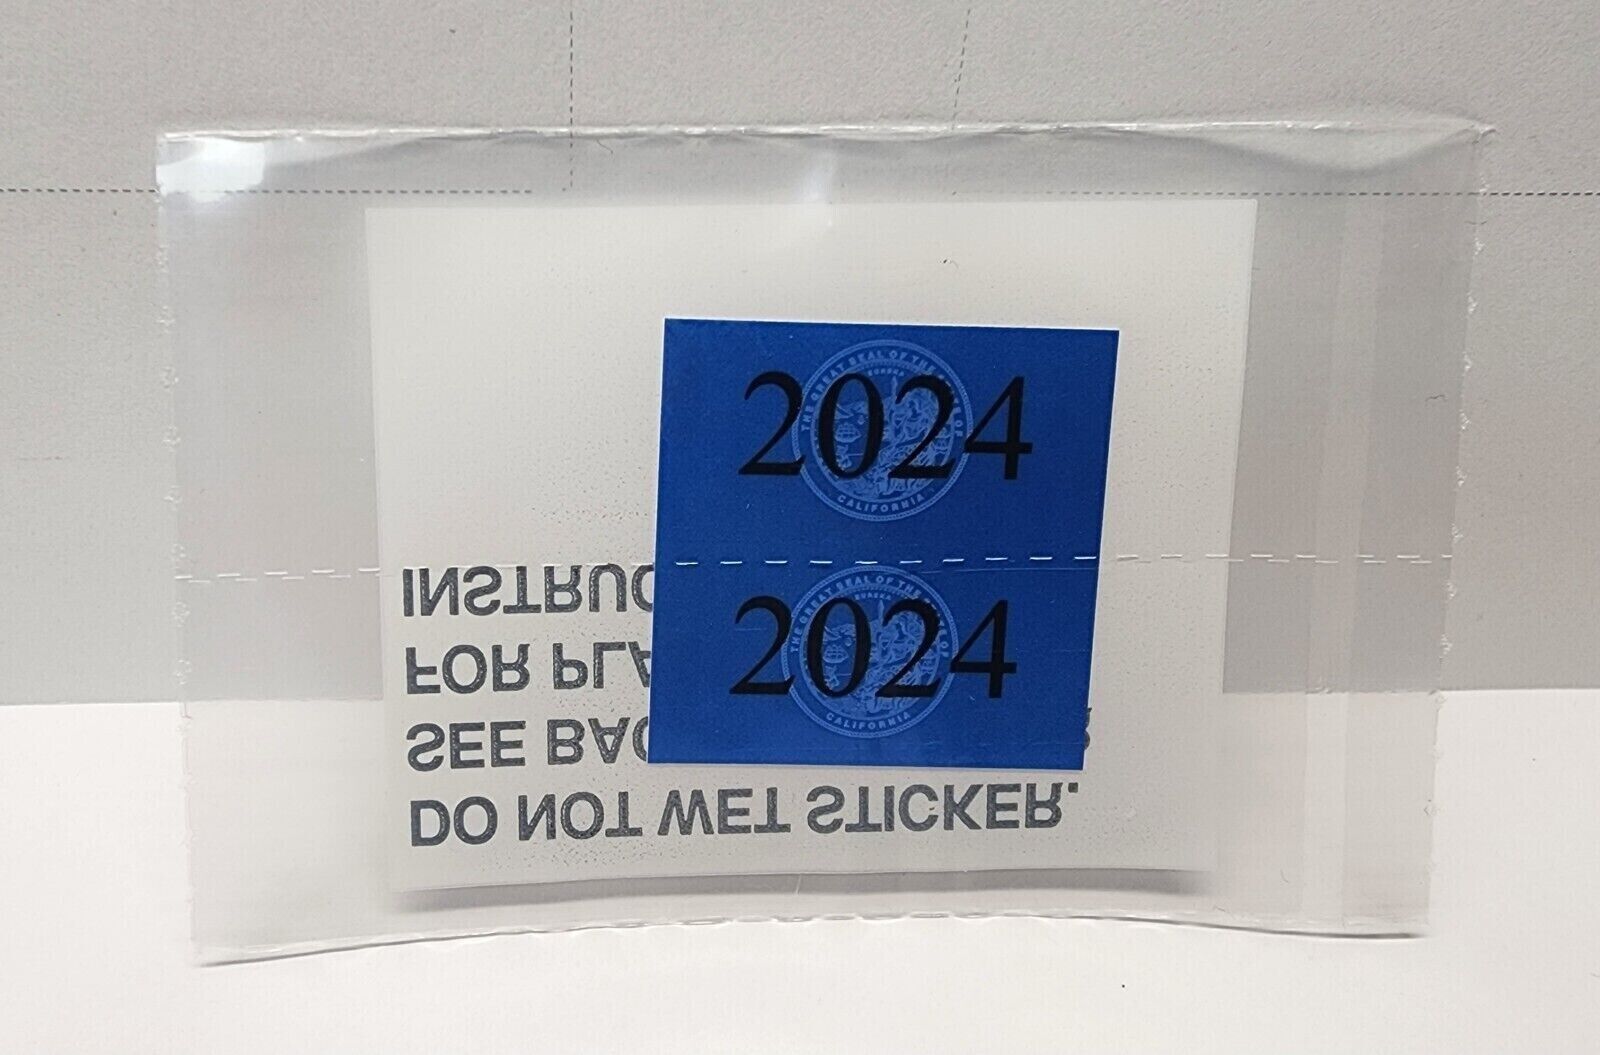 DMV STICKER CVRA 2024 Blue California Commercial Gross Vehicle Weight Sticker